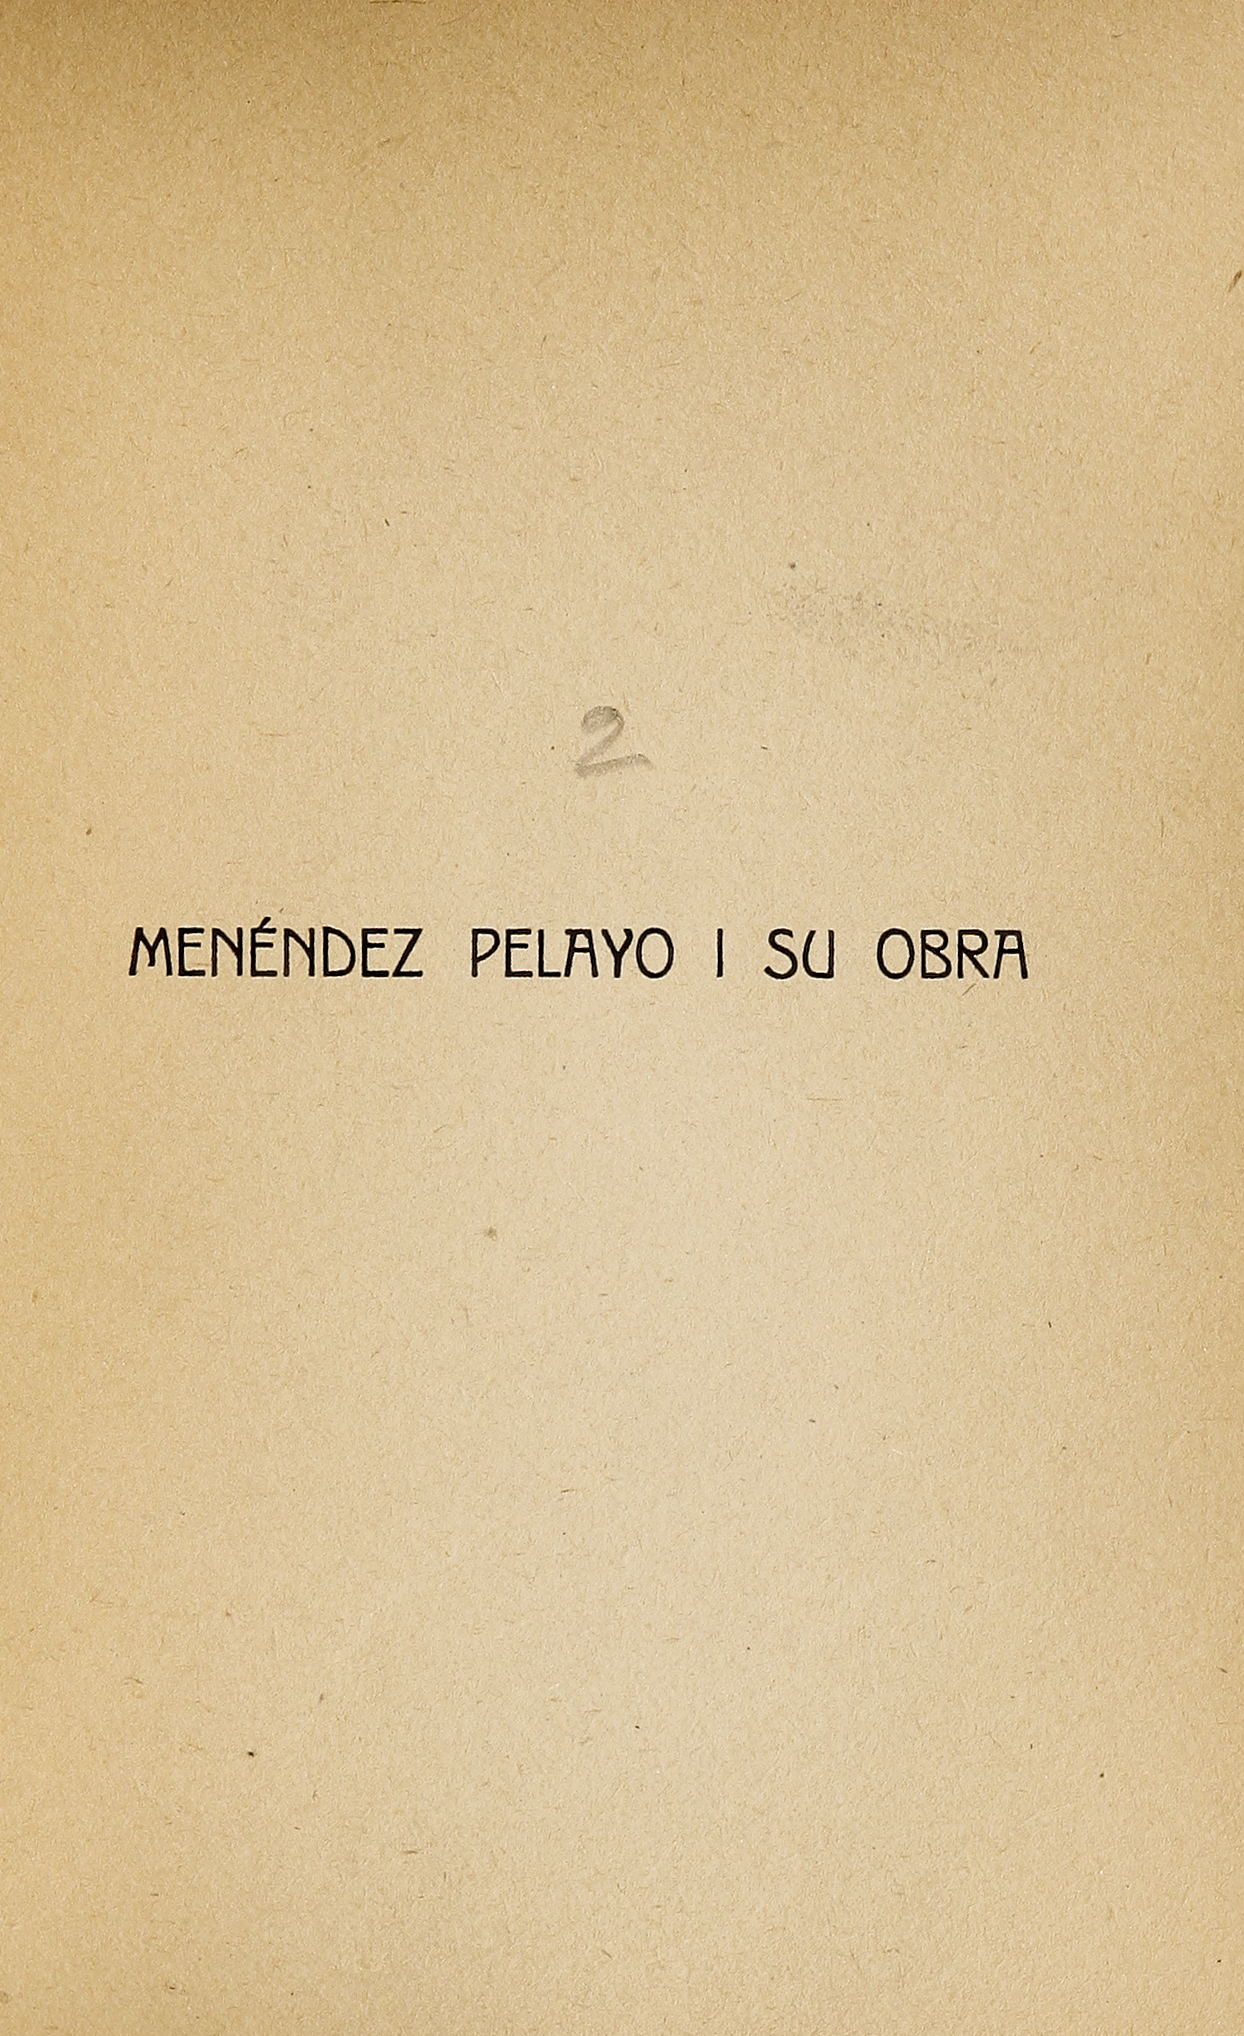 Menéndez Pelayo y su obra